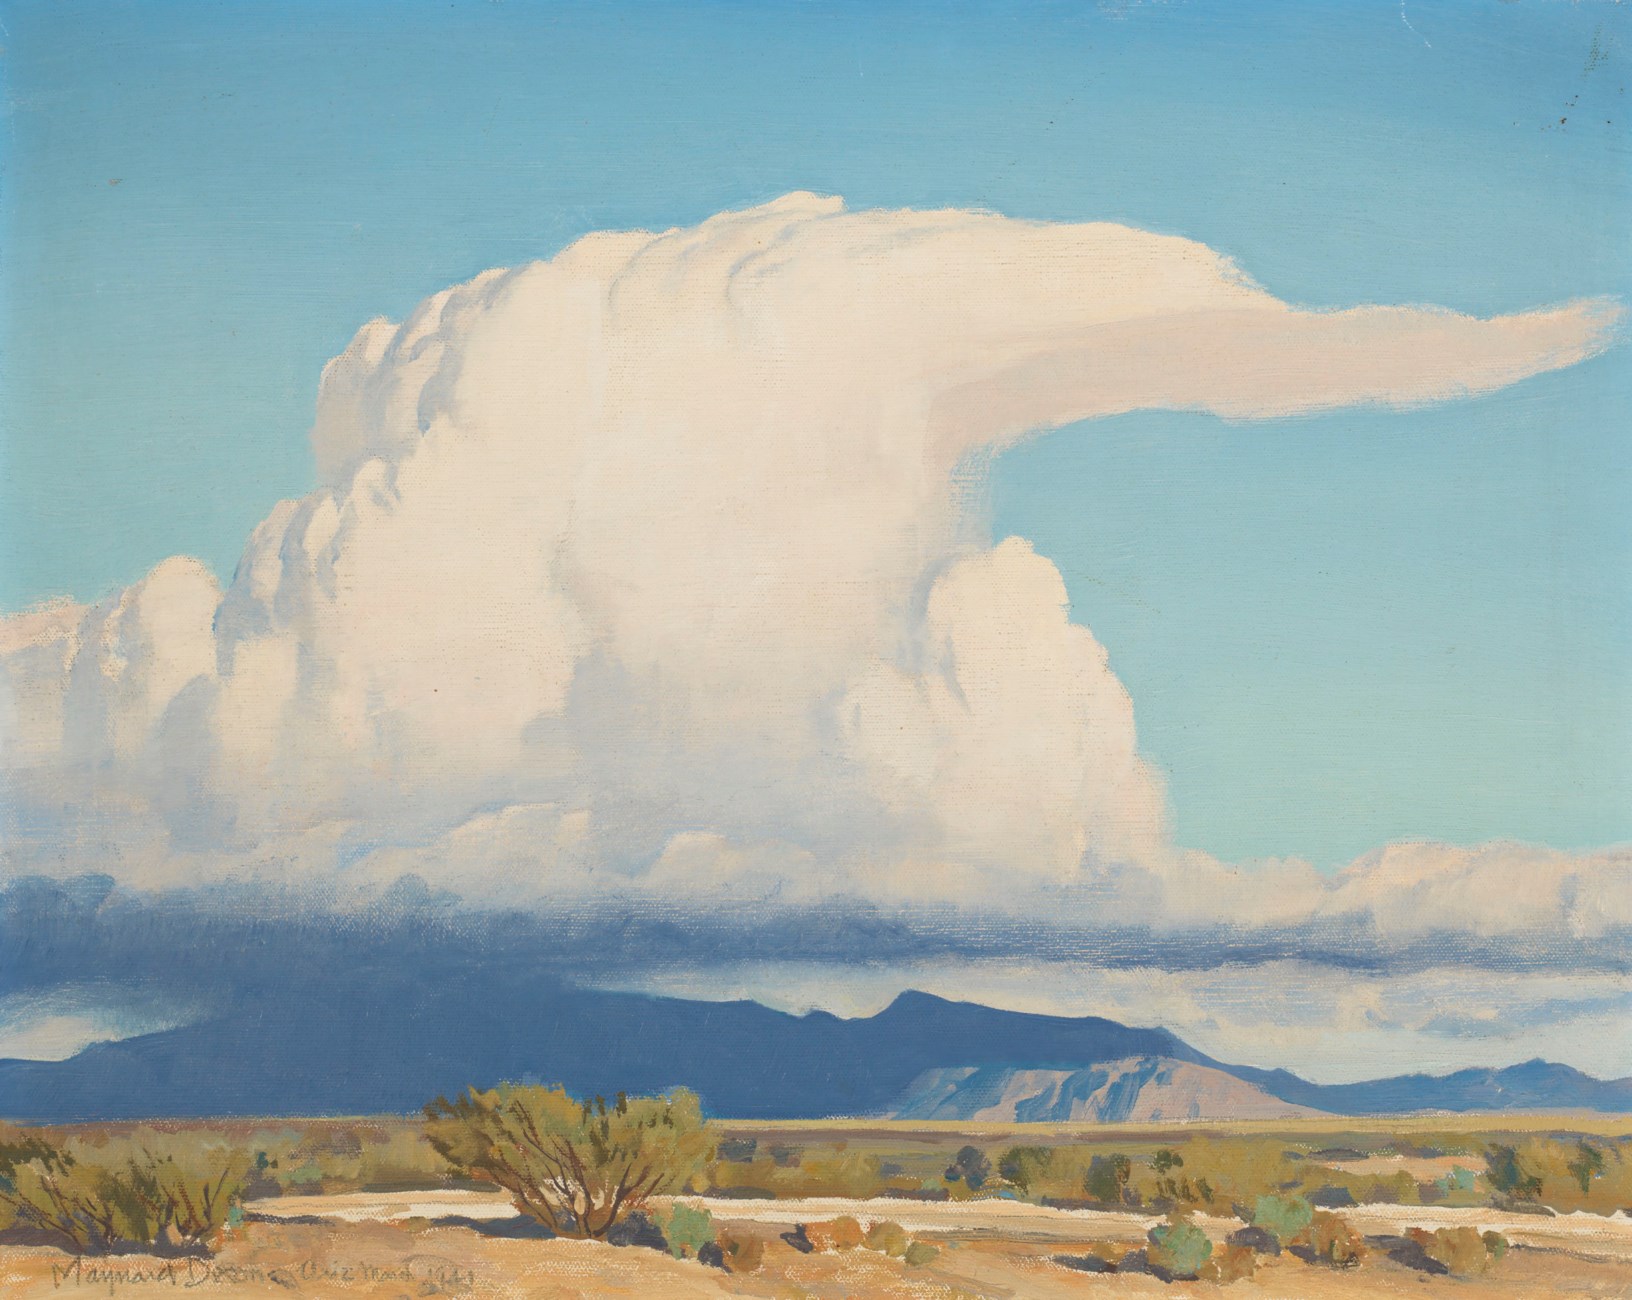 बादल by Maynard Dixon - १९४१ - ४०.६ x ५०.८ सेमी 